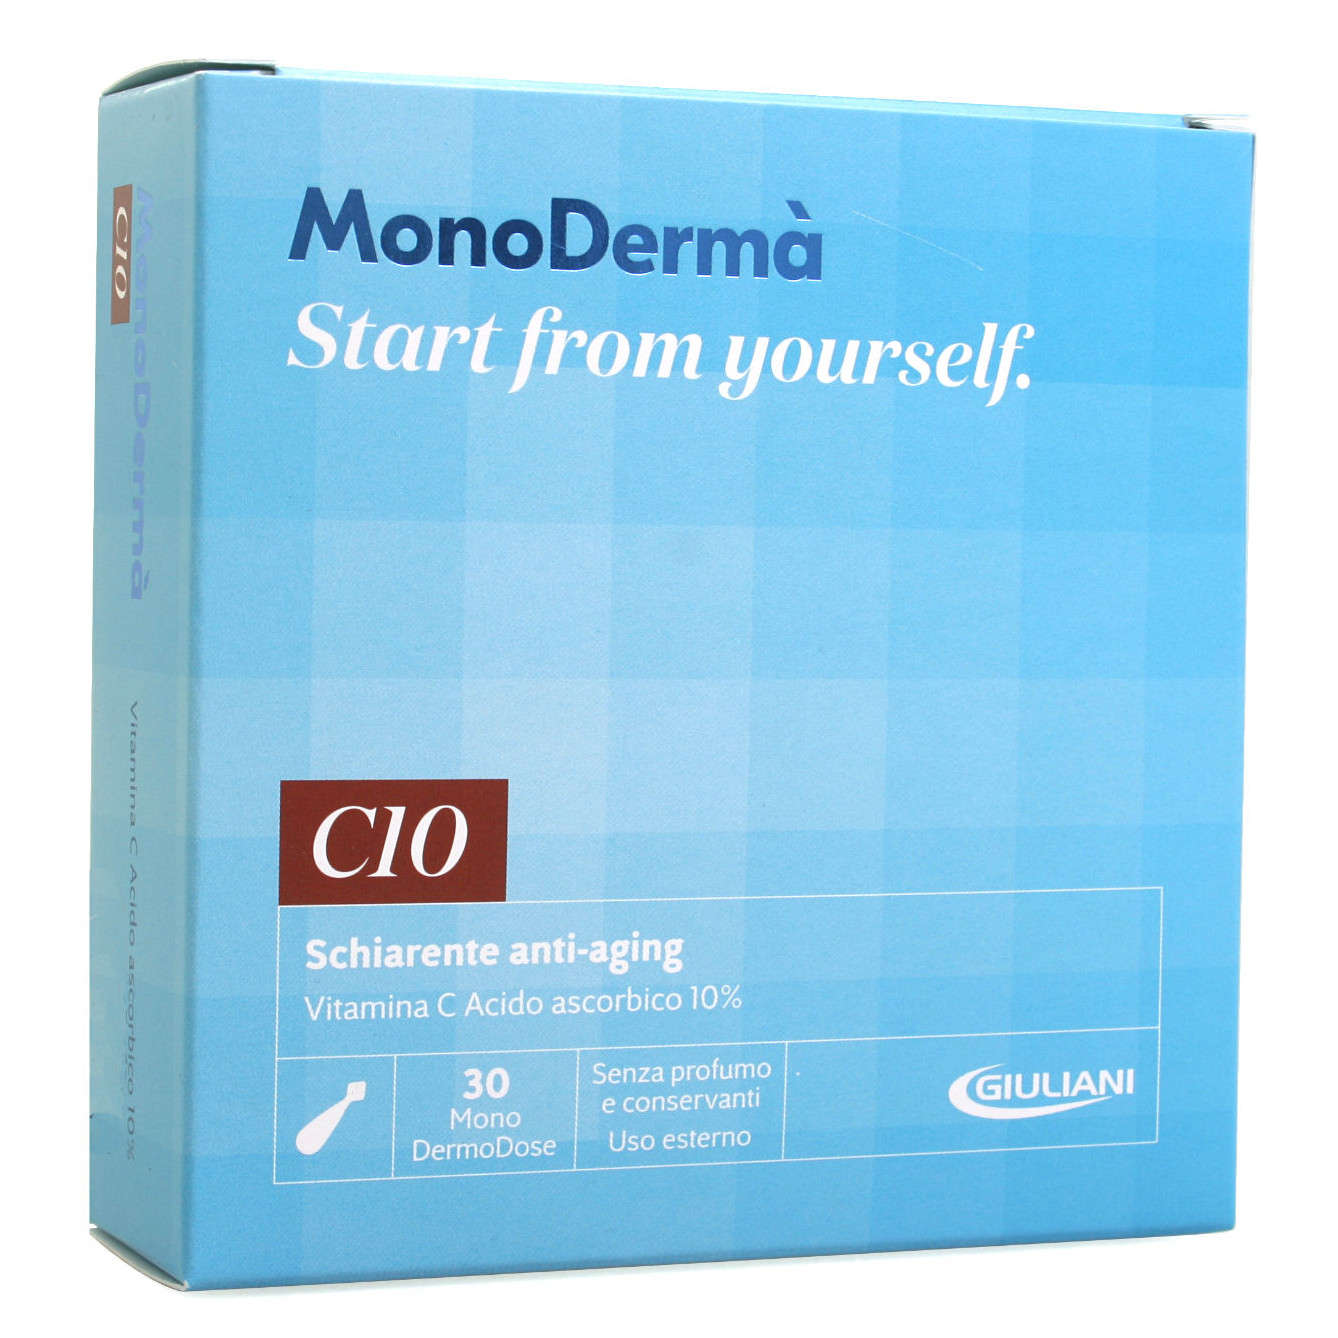 Monoderma' - A15 - 28 Dermodosi